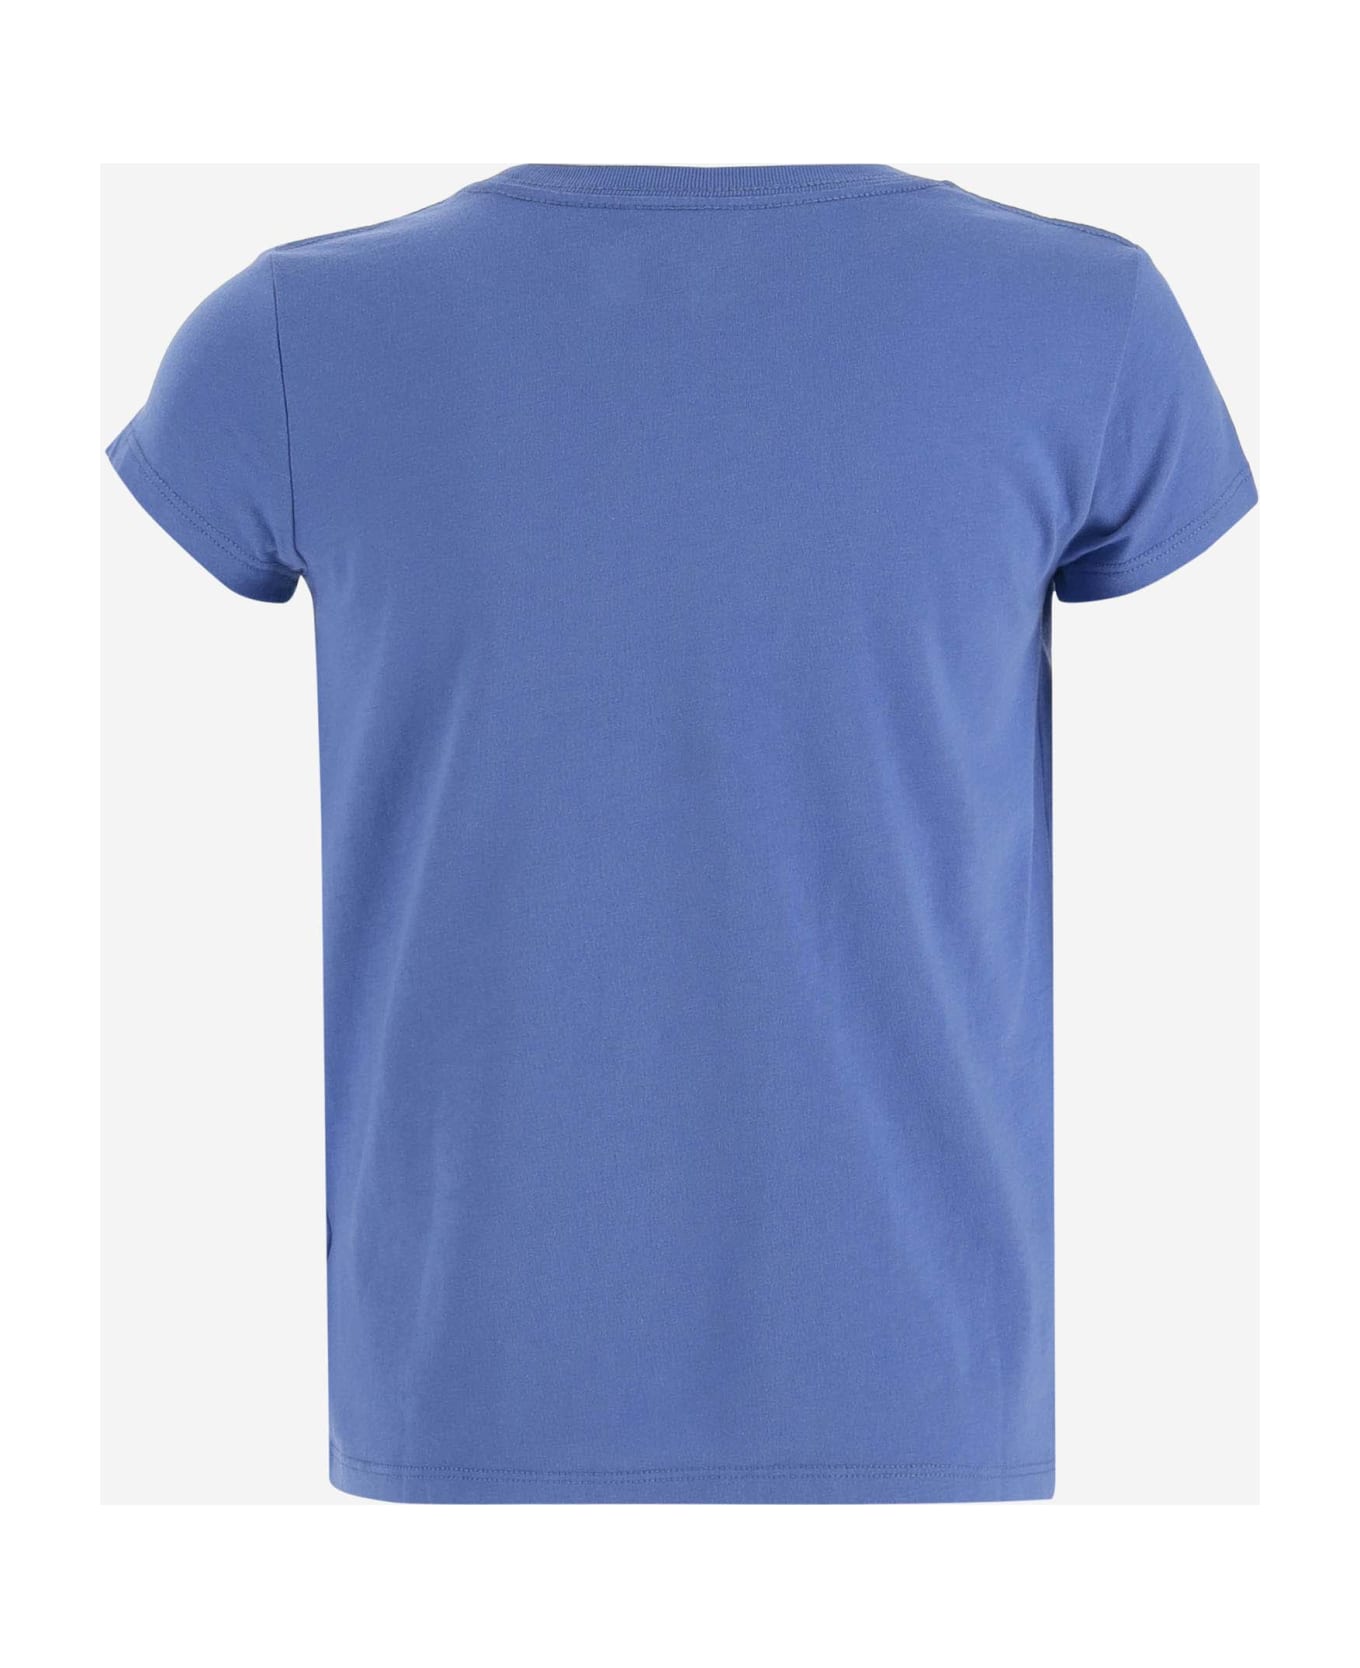 Ralph Lauren Cotton Polo Bear T-shirt - Blu Tシャツ＆ポロシャツ